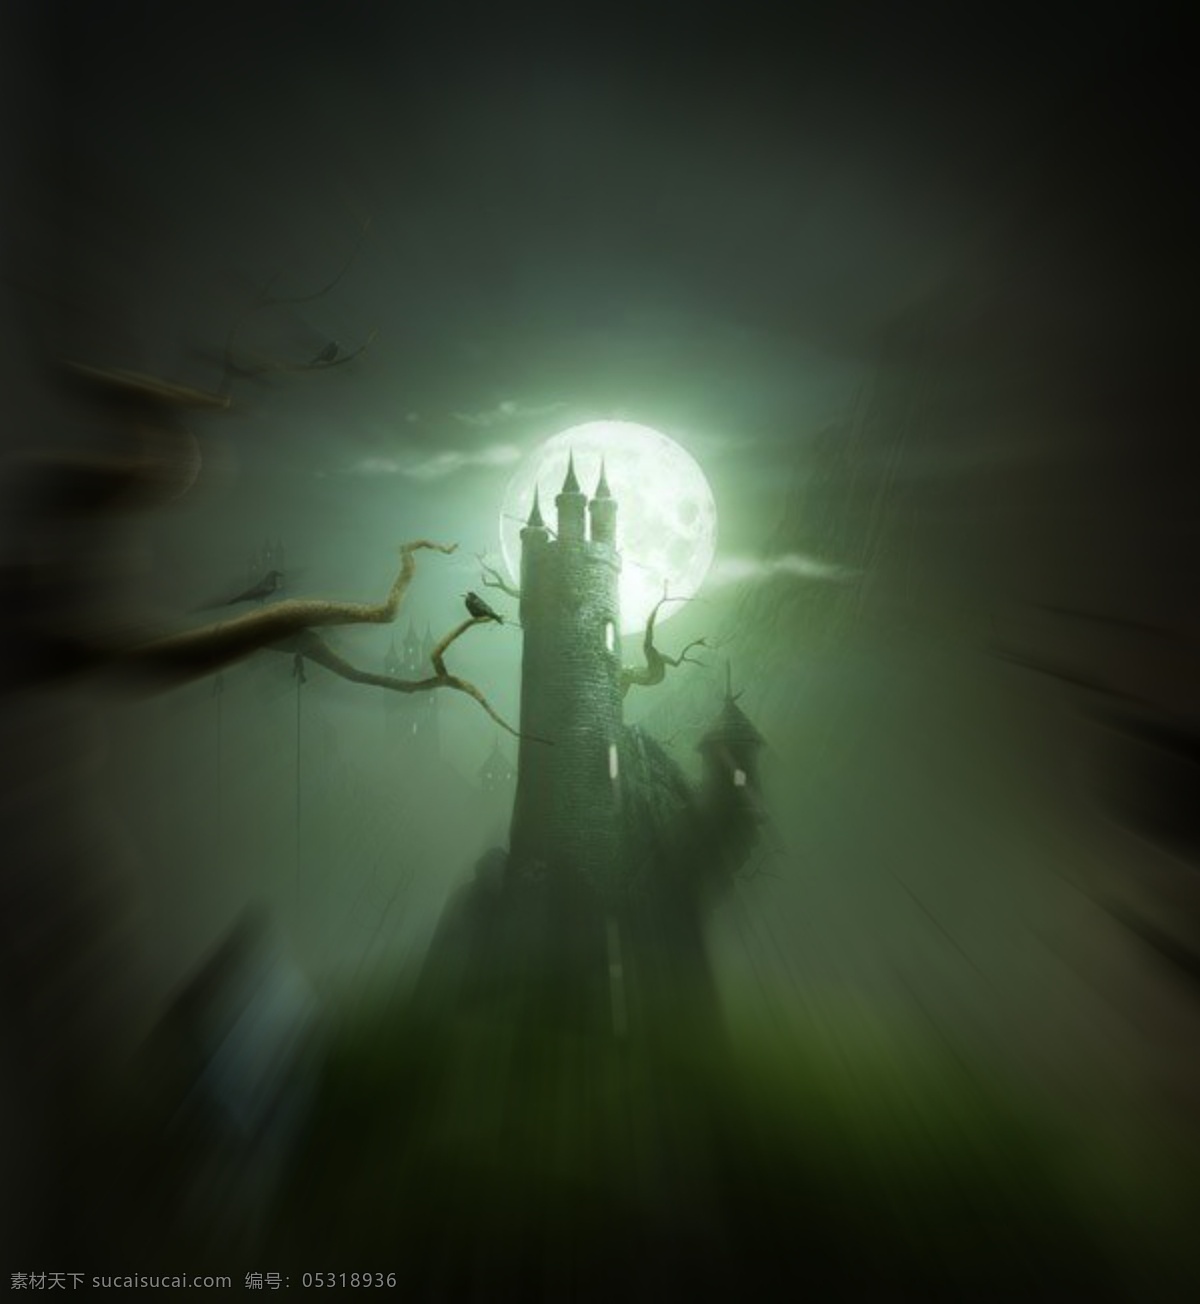 梦幻 童话 城堡 童话城堡 梦幻城堡素材 唯美梦幻城堡 psd源文件